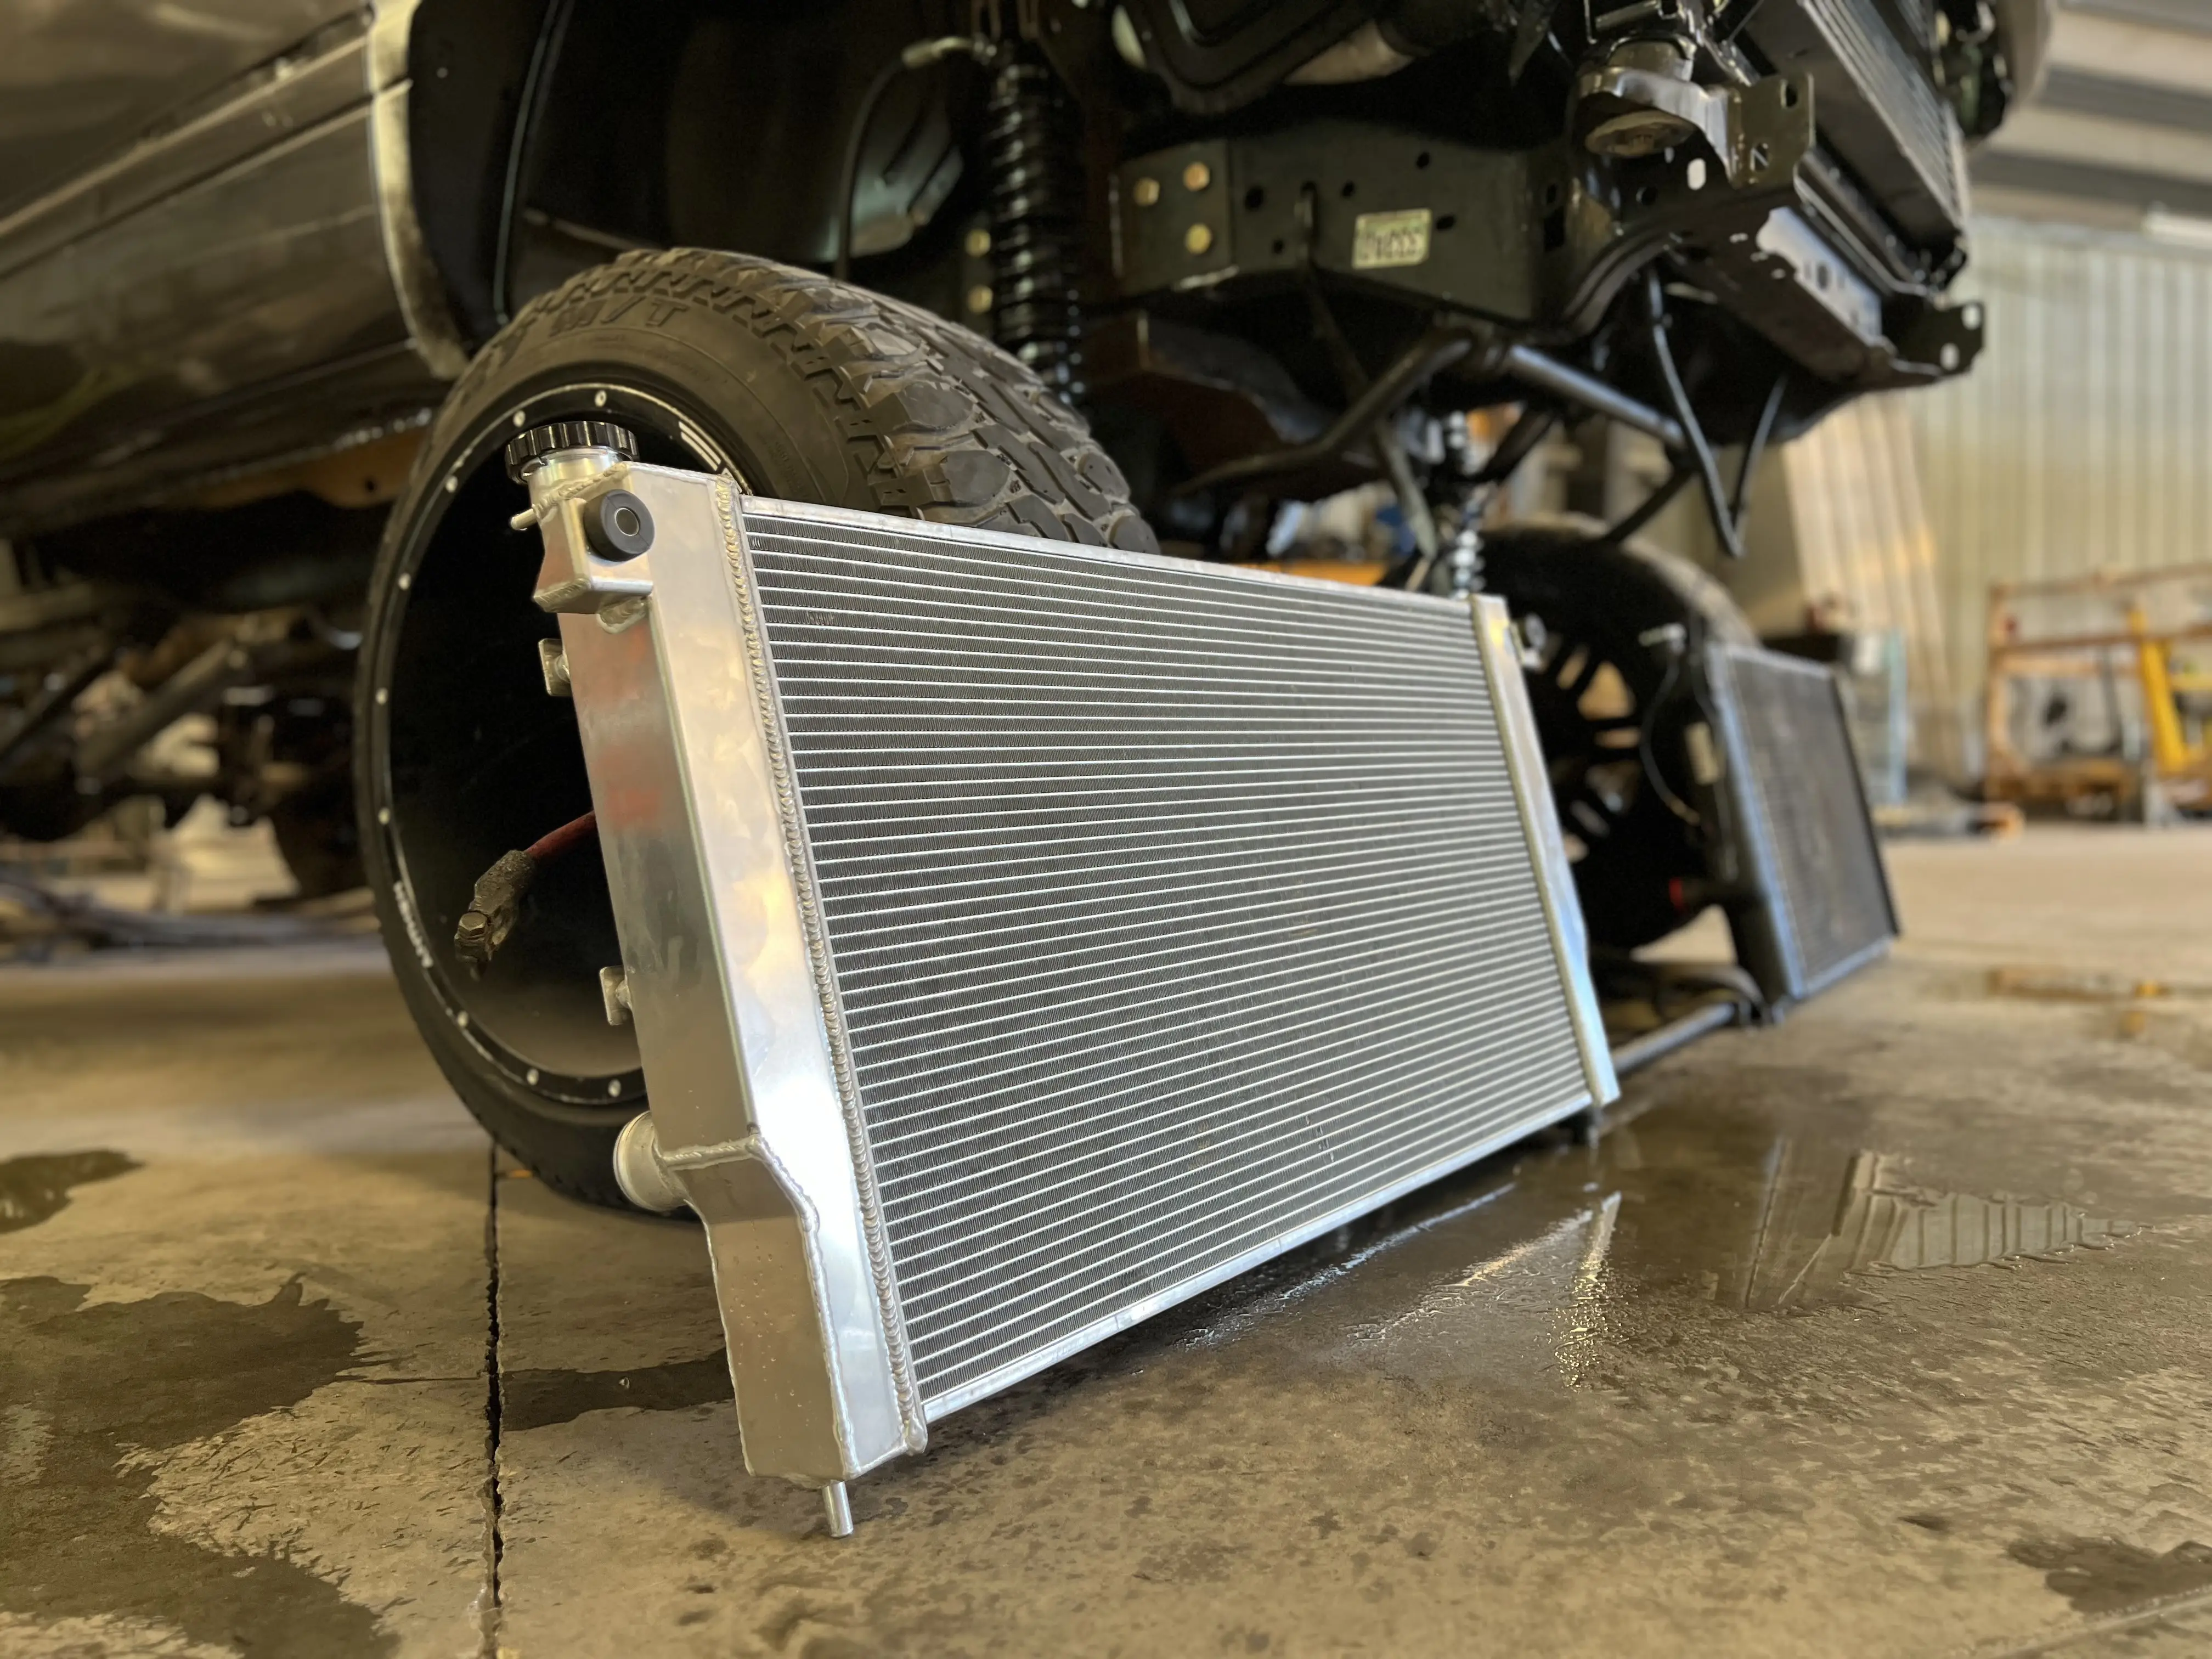 Offres Spéciales 1 2 3 4 rangées de radiateur en aluminium complet pour jeep ford dodge toyota GMC honda Chevrolet buick radiateur de voiture